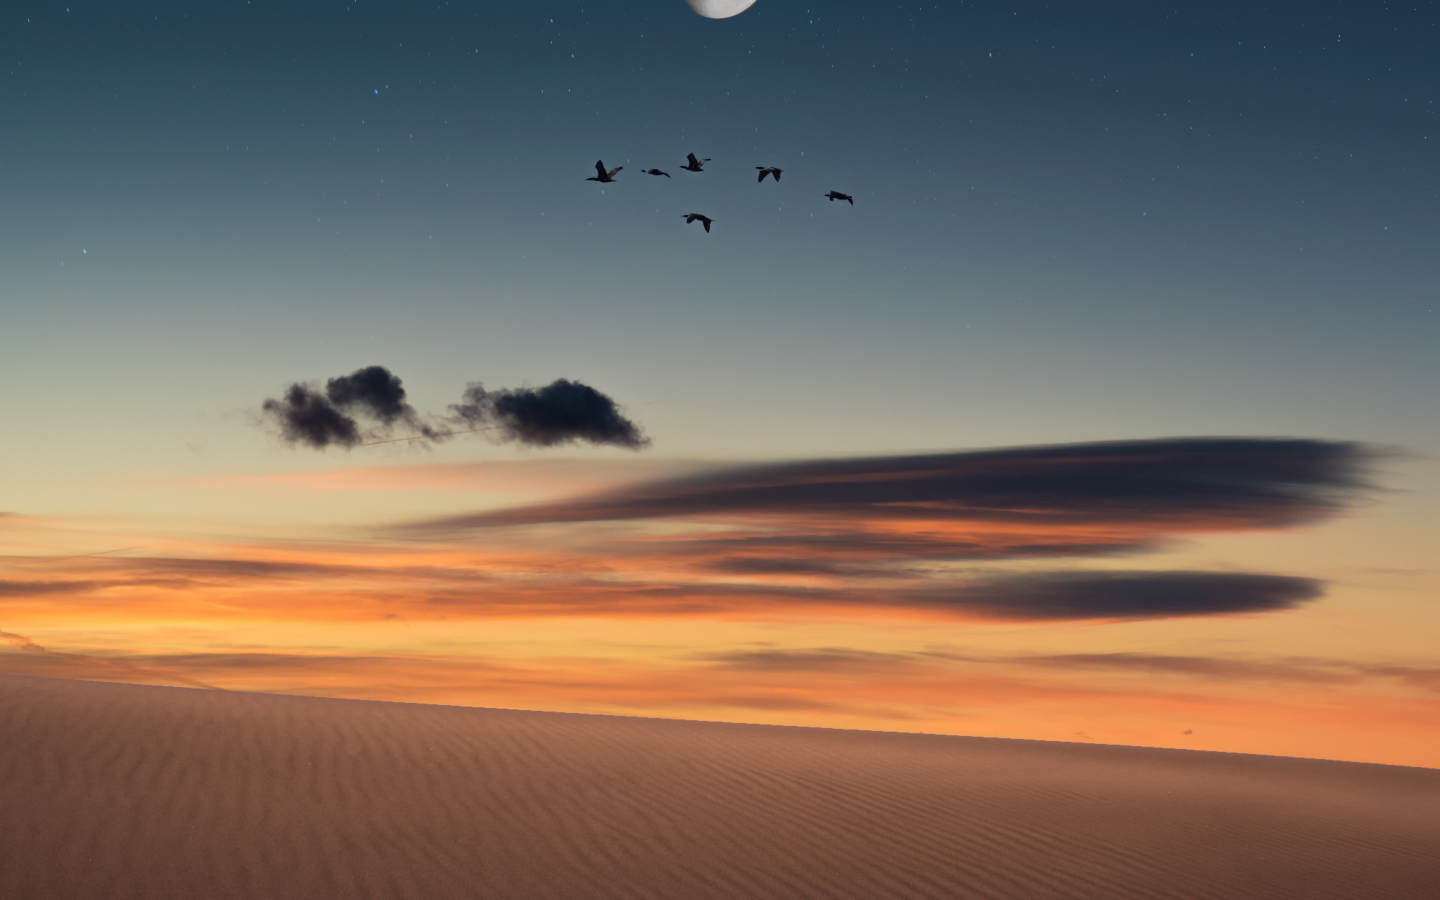 Full moon, birds, landscape, desert, 1440x900 wallpaper